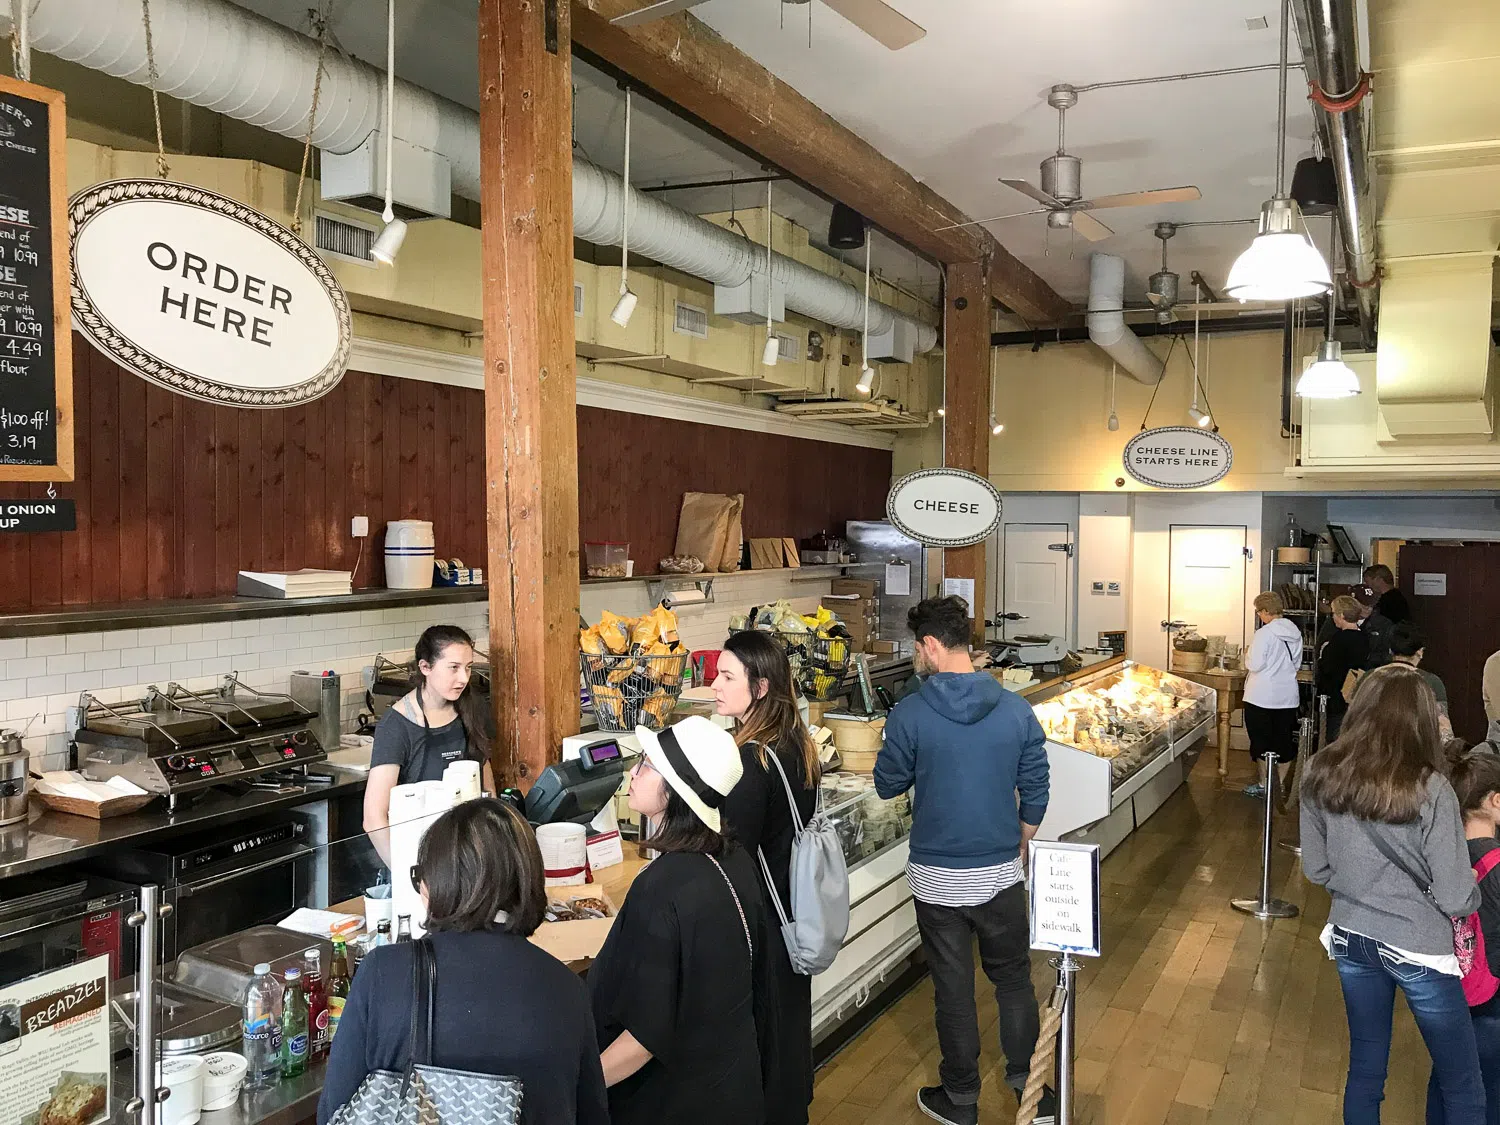 Customers ordering inside Beecher's